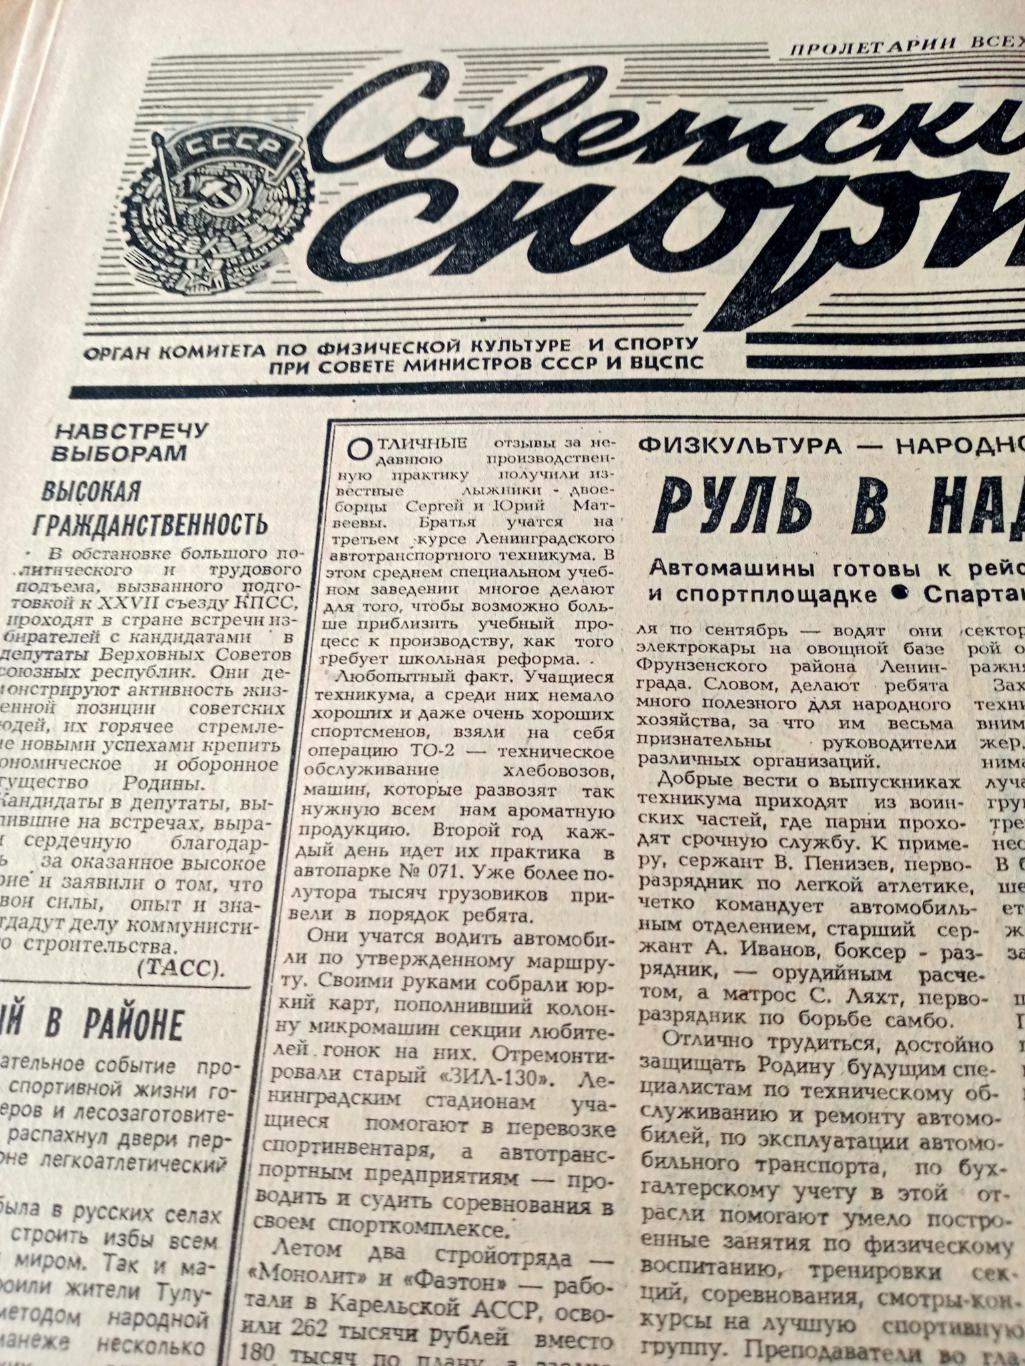 Итальянский сюрприз. Советский спорт. 1985 год. 23 января